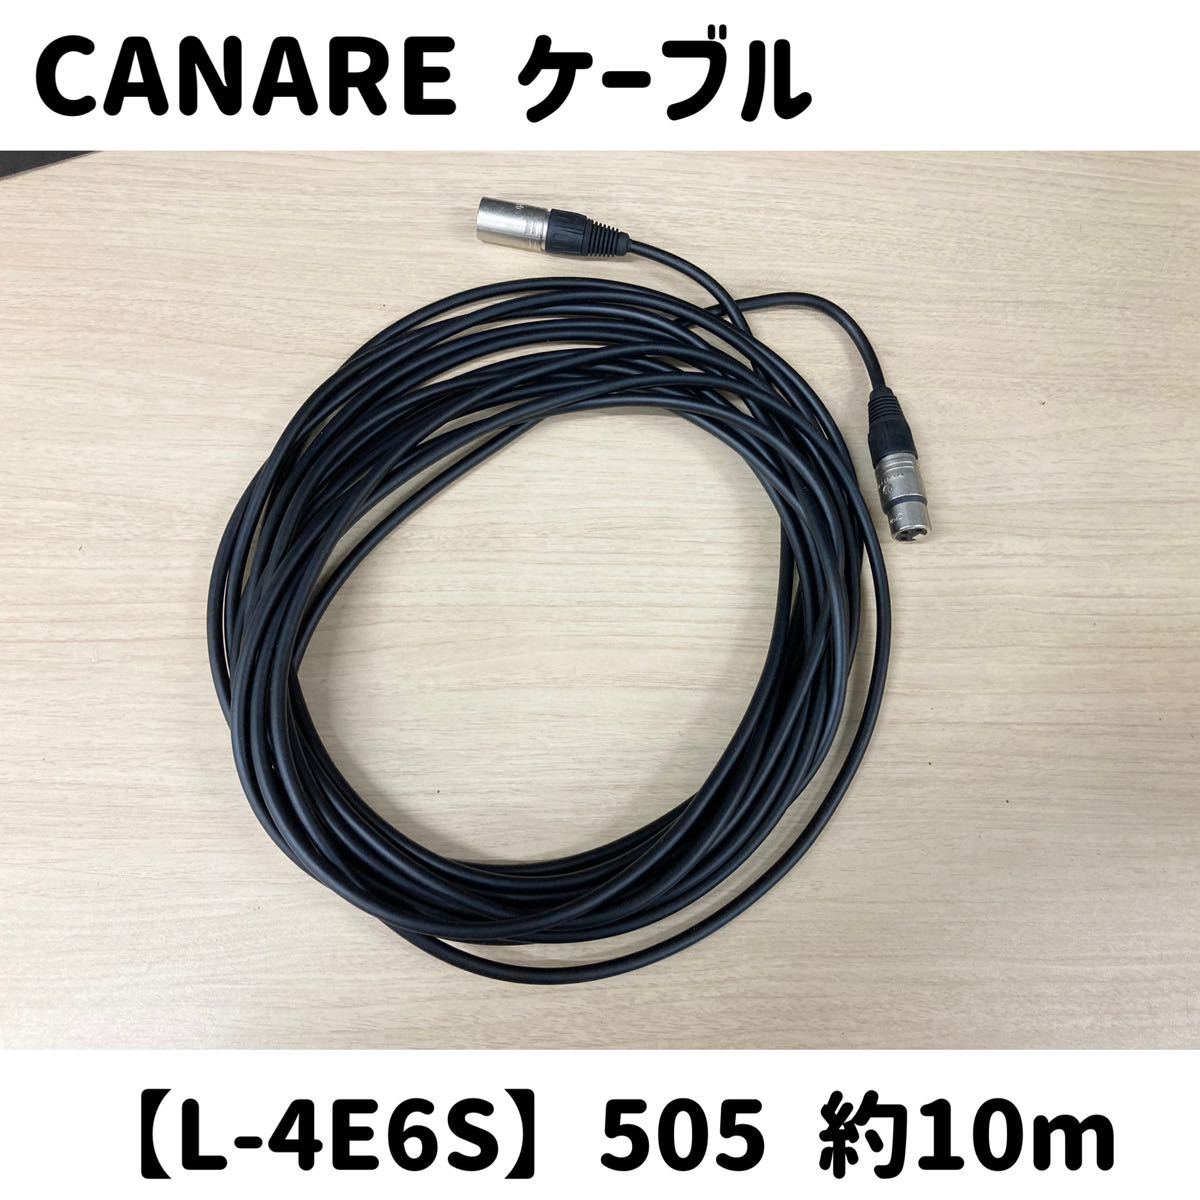 .{17} CANARE микрофонный кабель L-4E6S 505 примерно 10m NEUTRIK коннектор nc-mx nc-fx звук б/у кабель 3 булавка Canare (240226 H-1-3)